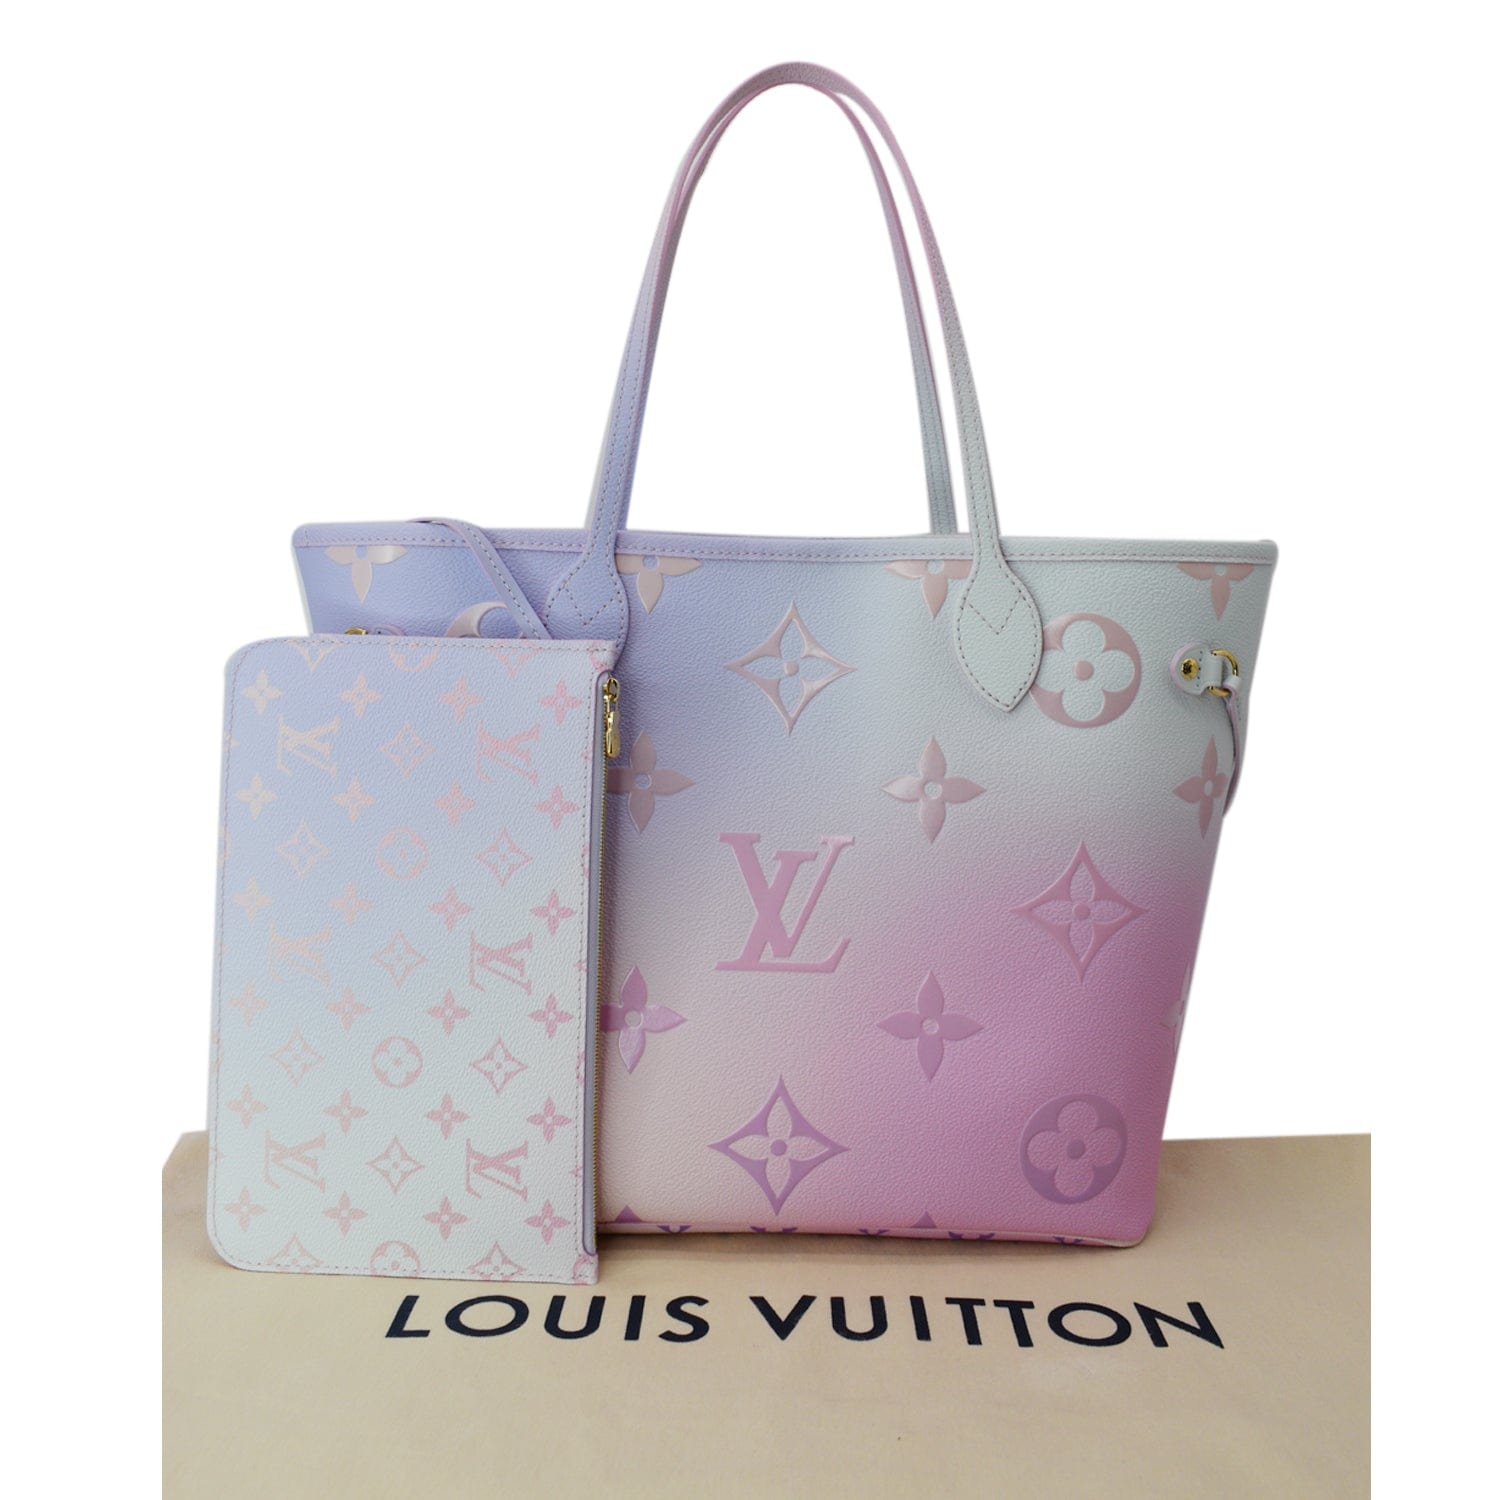 n on Twitter  Pink louis vuitton bag, Bags, Louis vuitton pink